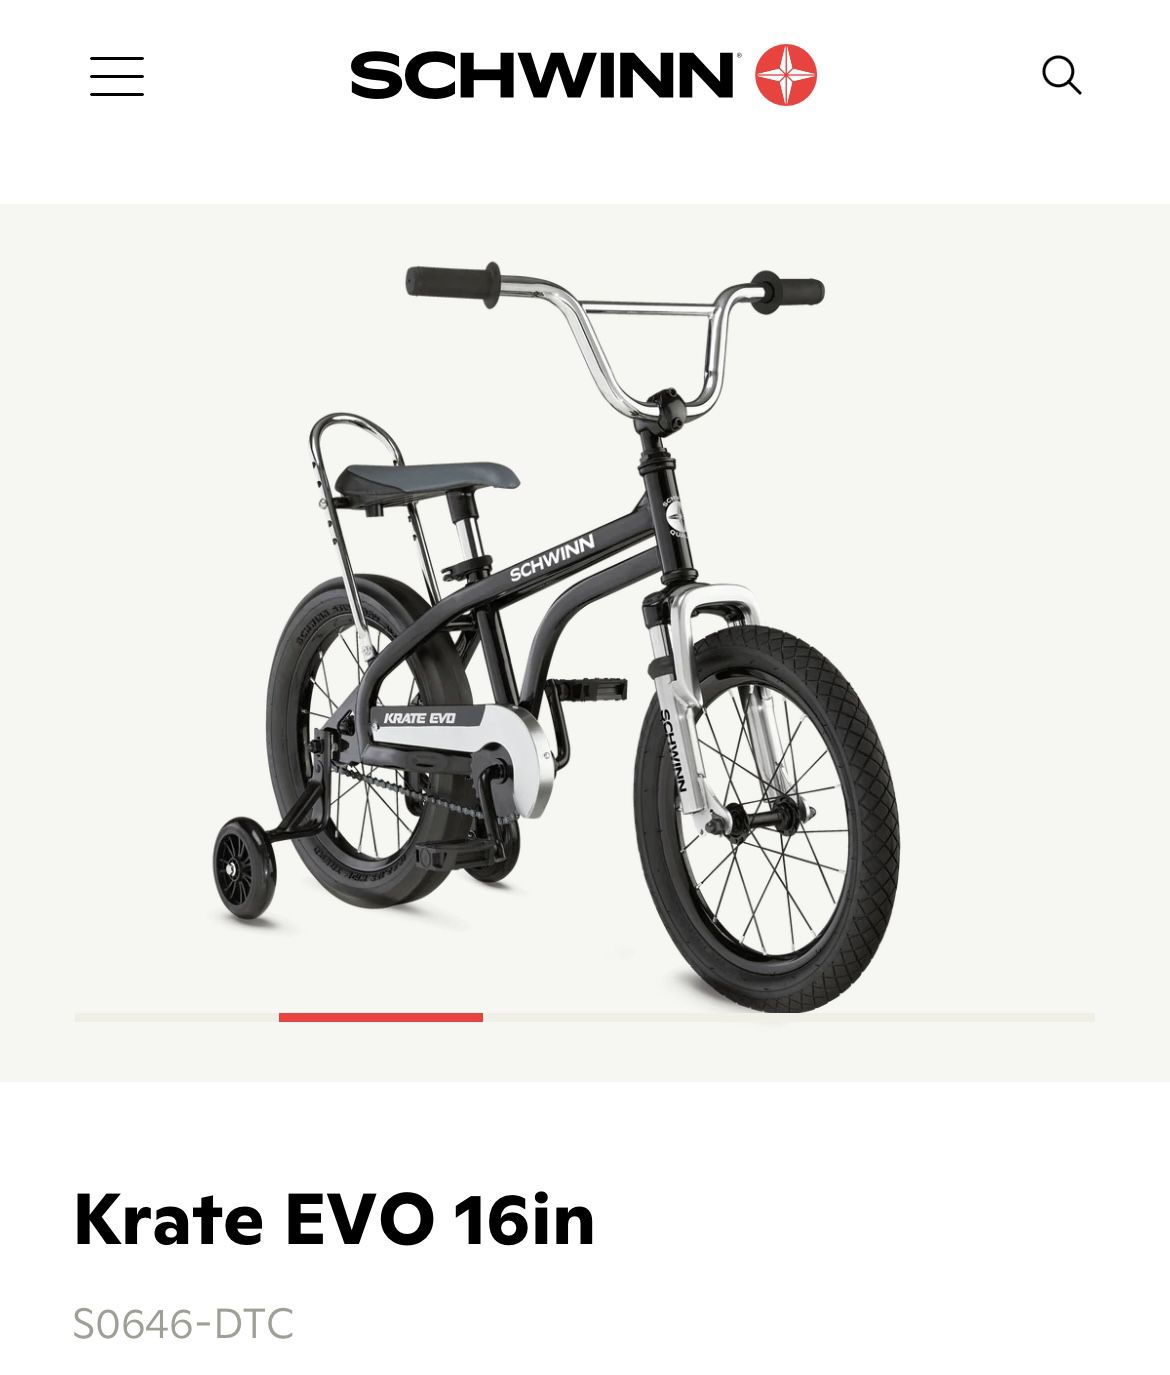 Krate EVO 16in - Brand New In Box